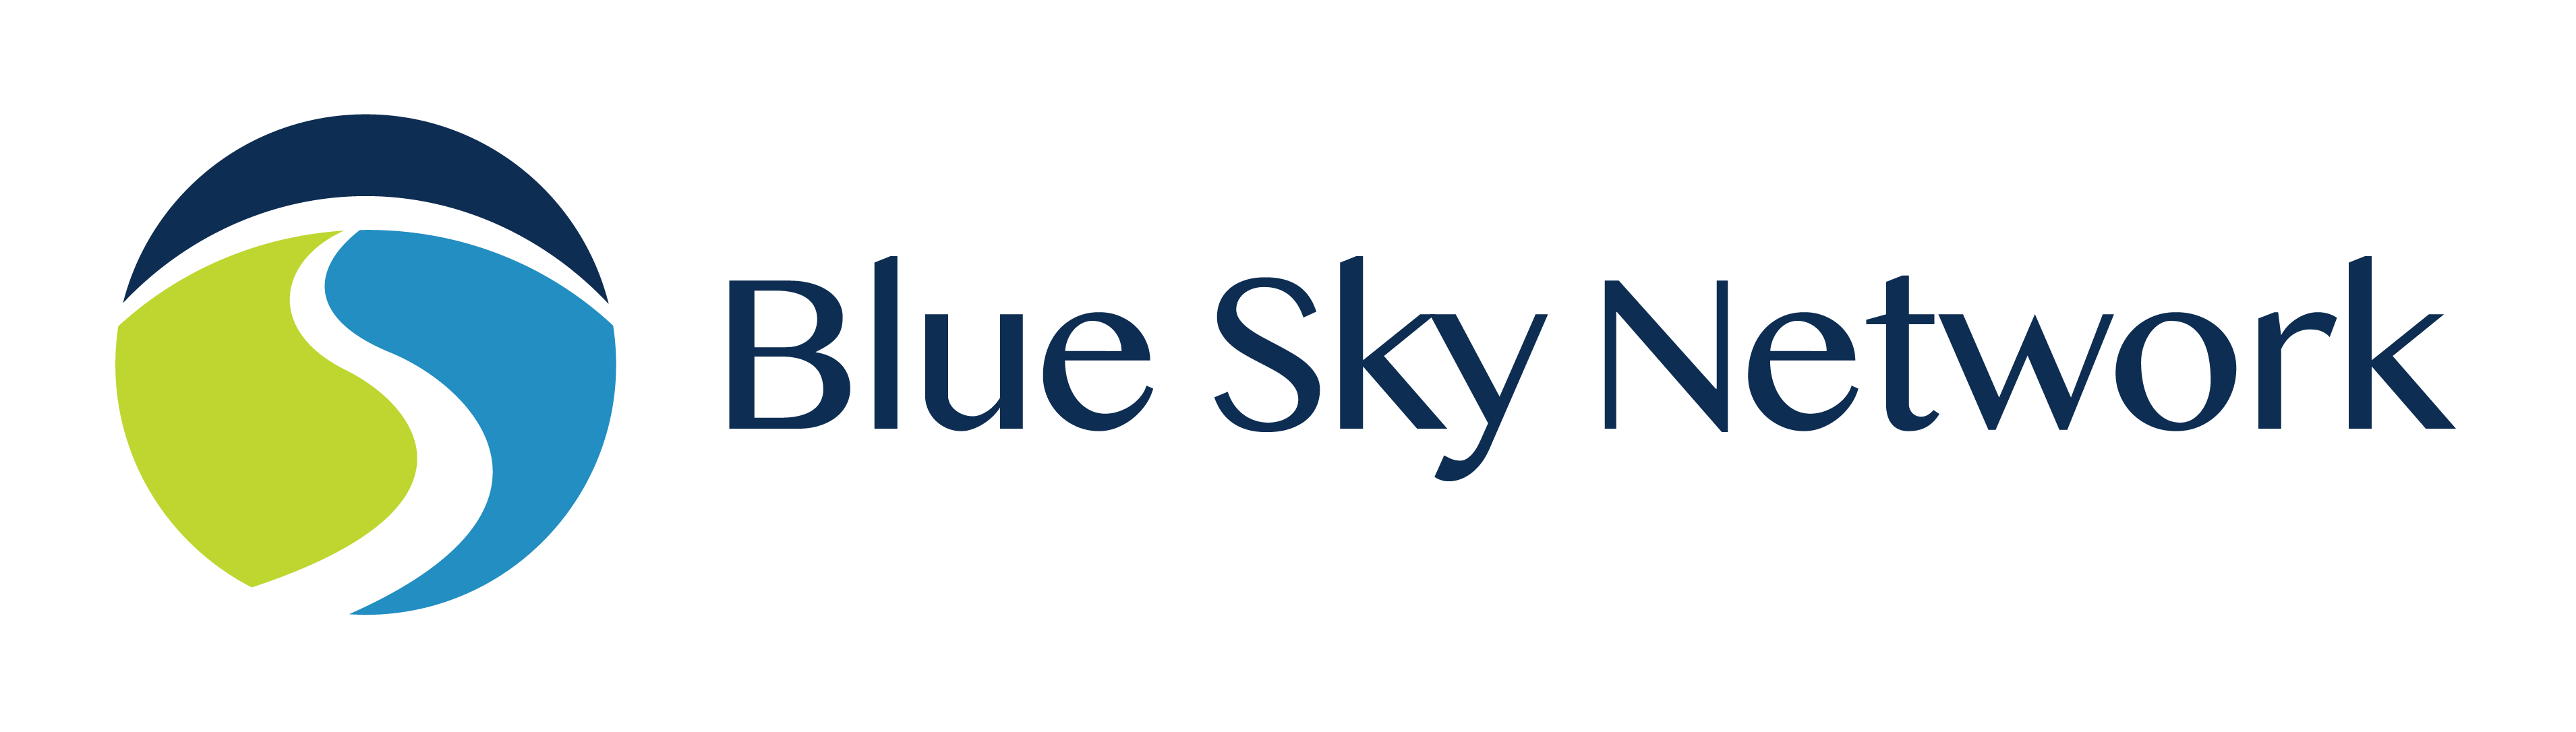 Blue Sky Network Brasil